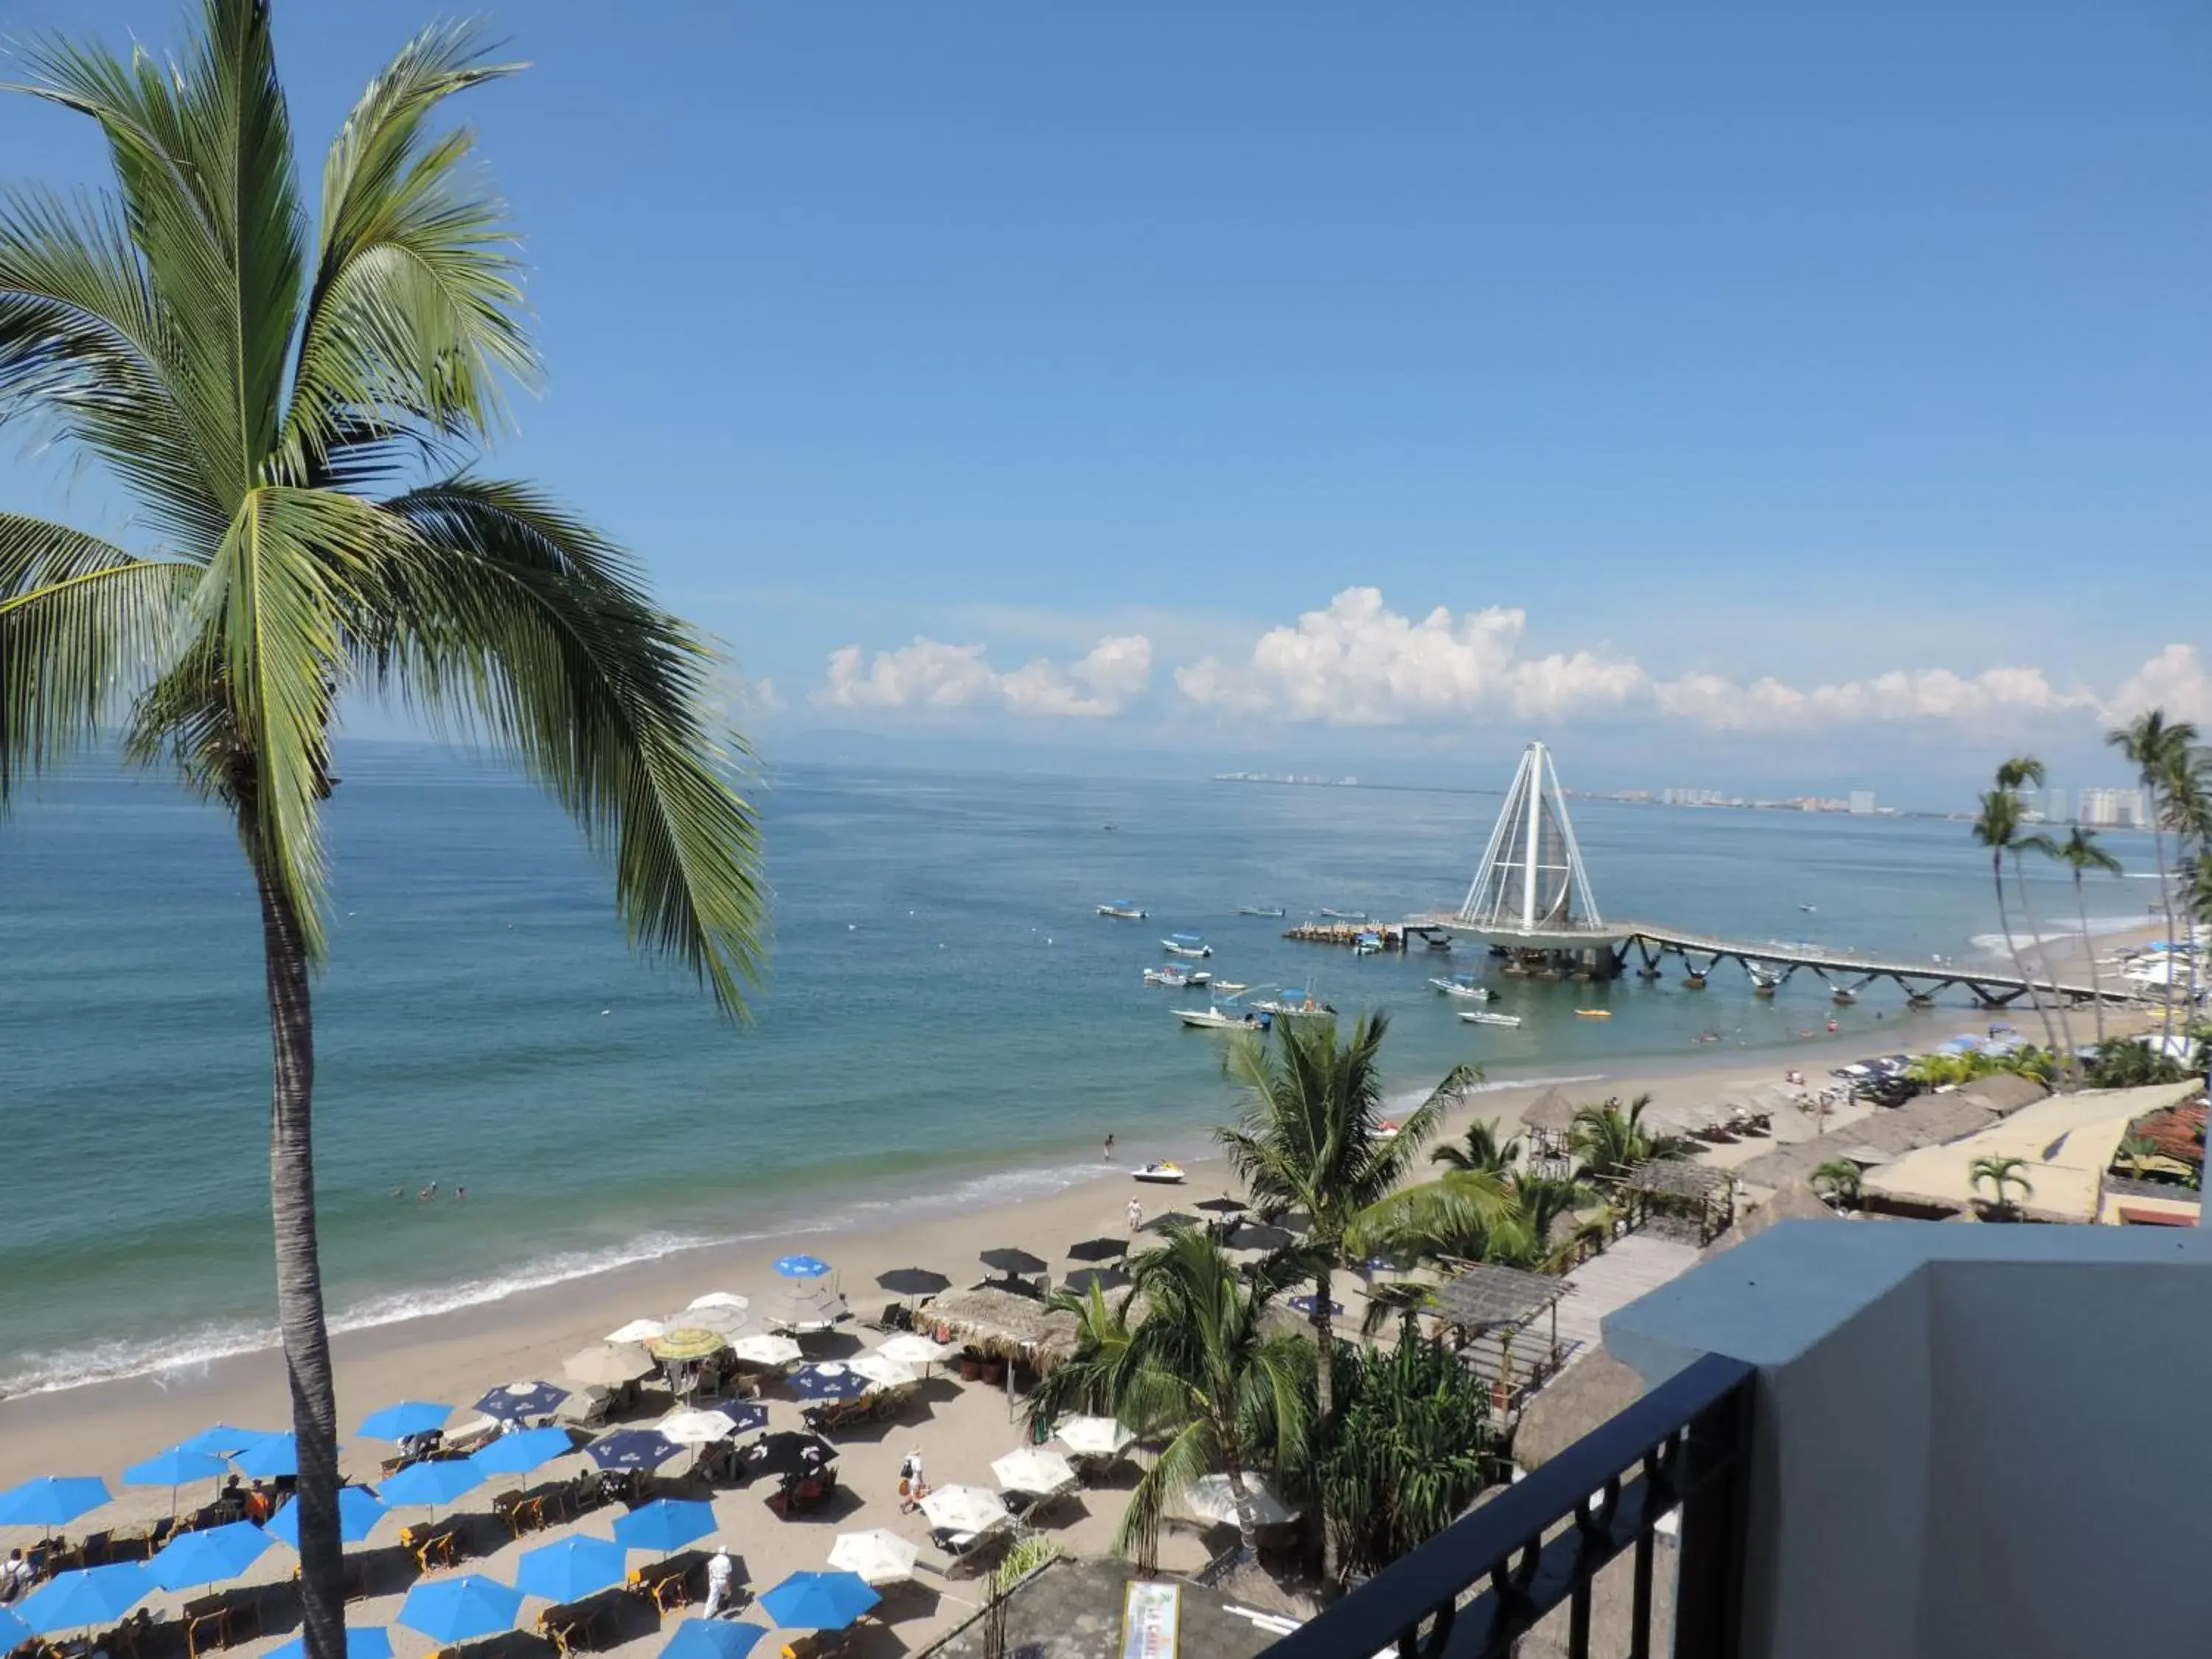 Day, Sea View in Tropicana Hotel Puerto Vallarta